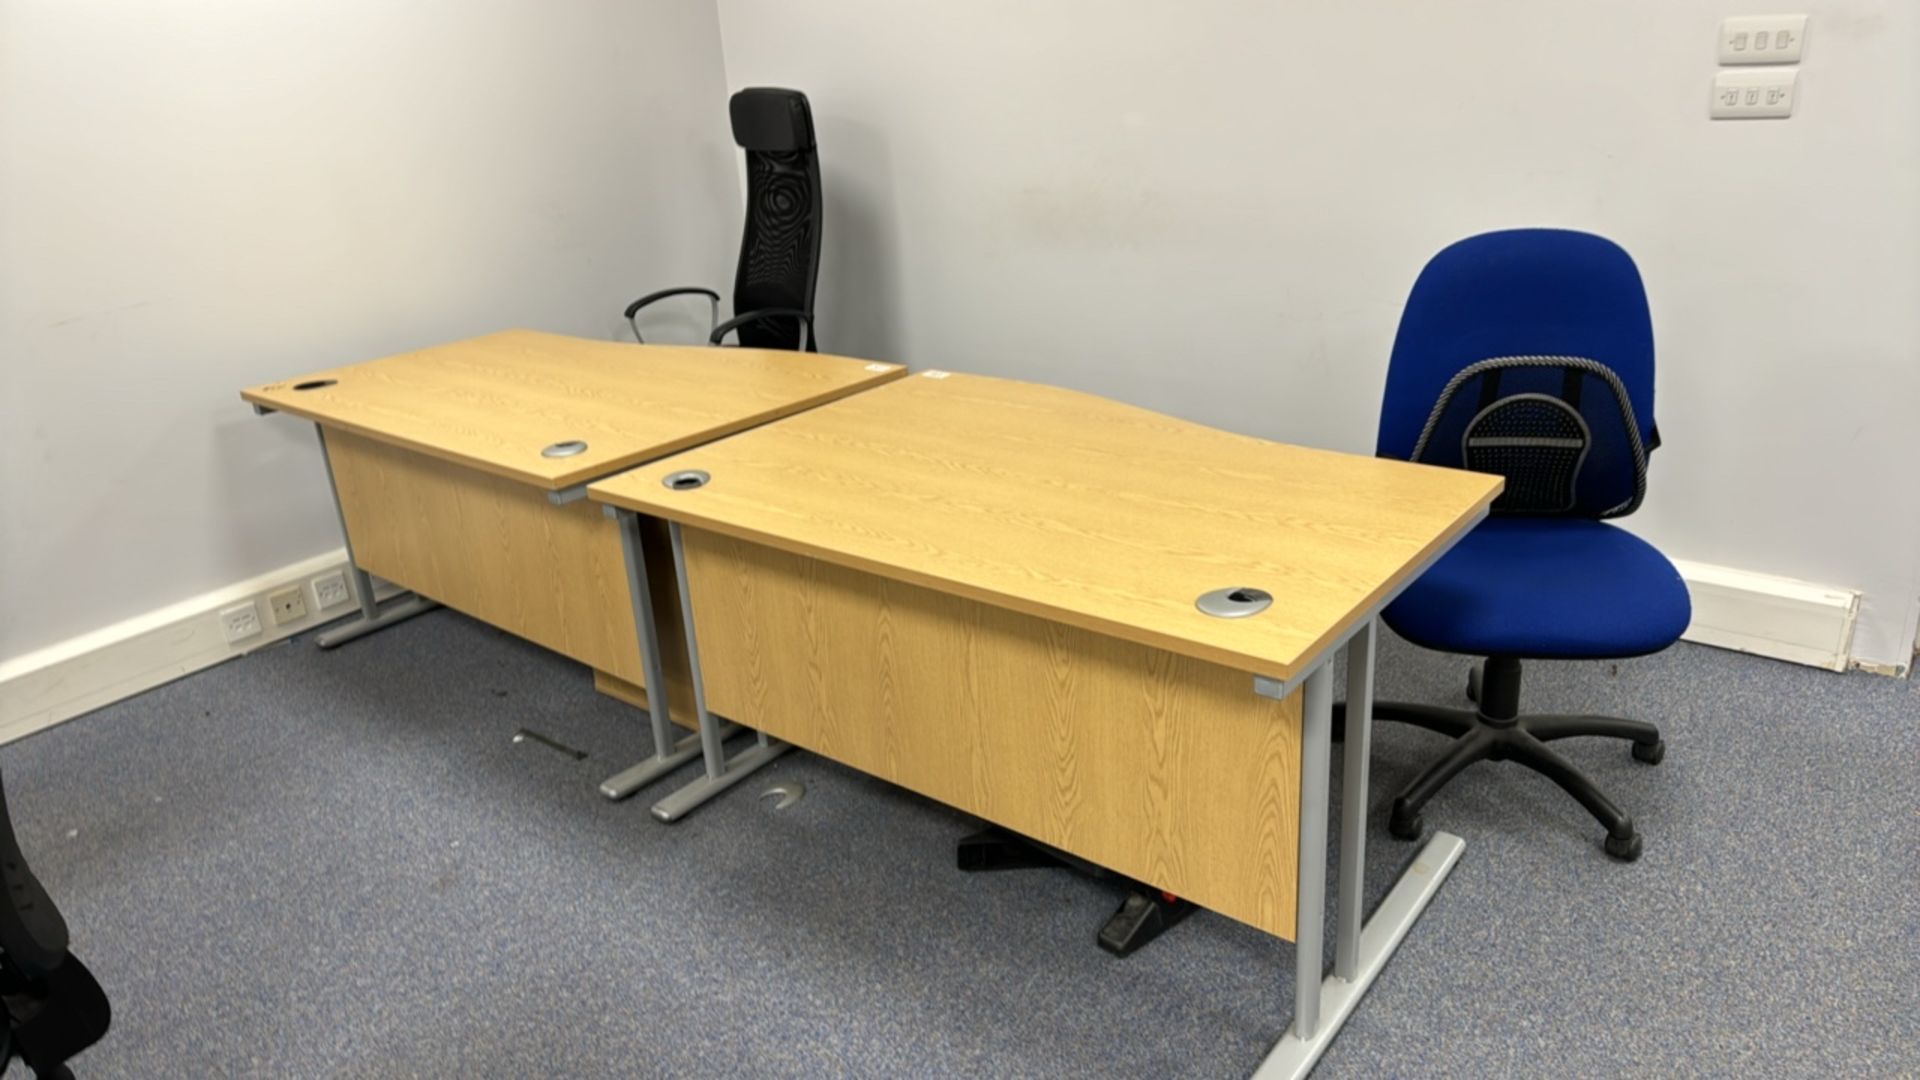 Wooden Effect Office Desks x2 With Office Chairs x2 - Bild 2 aus 3